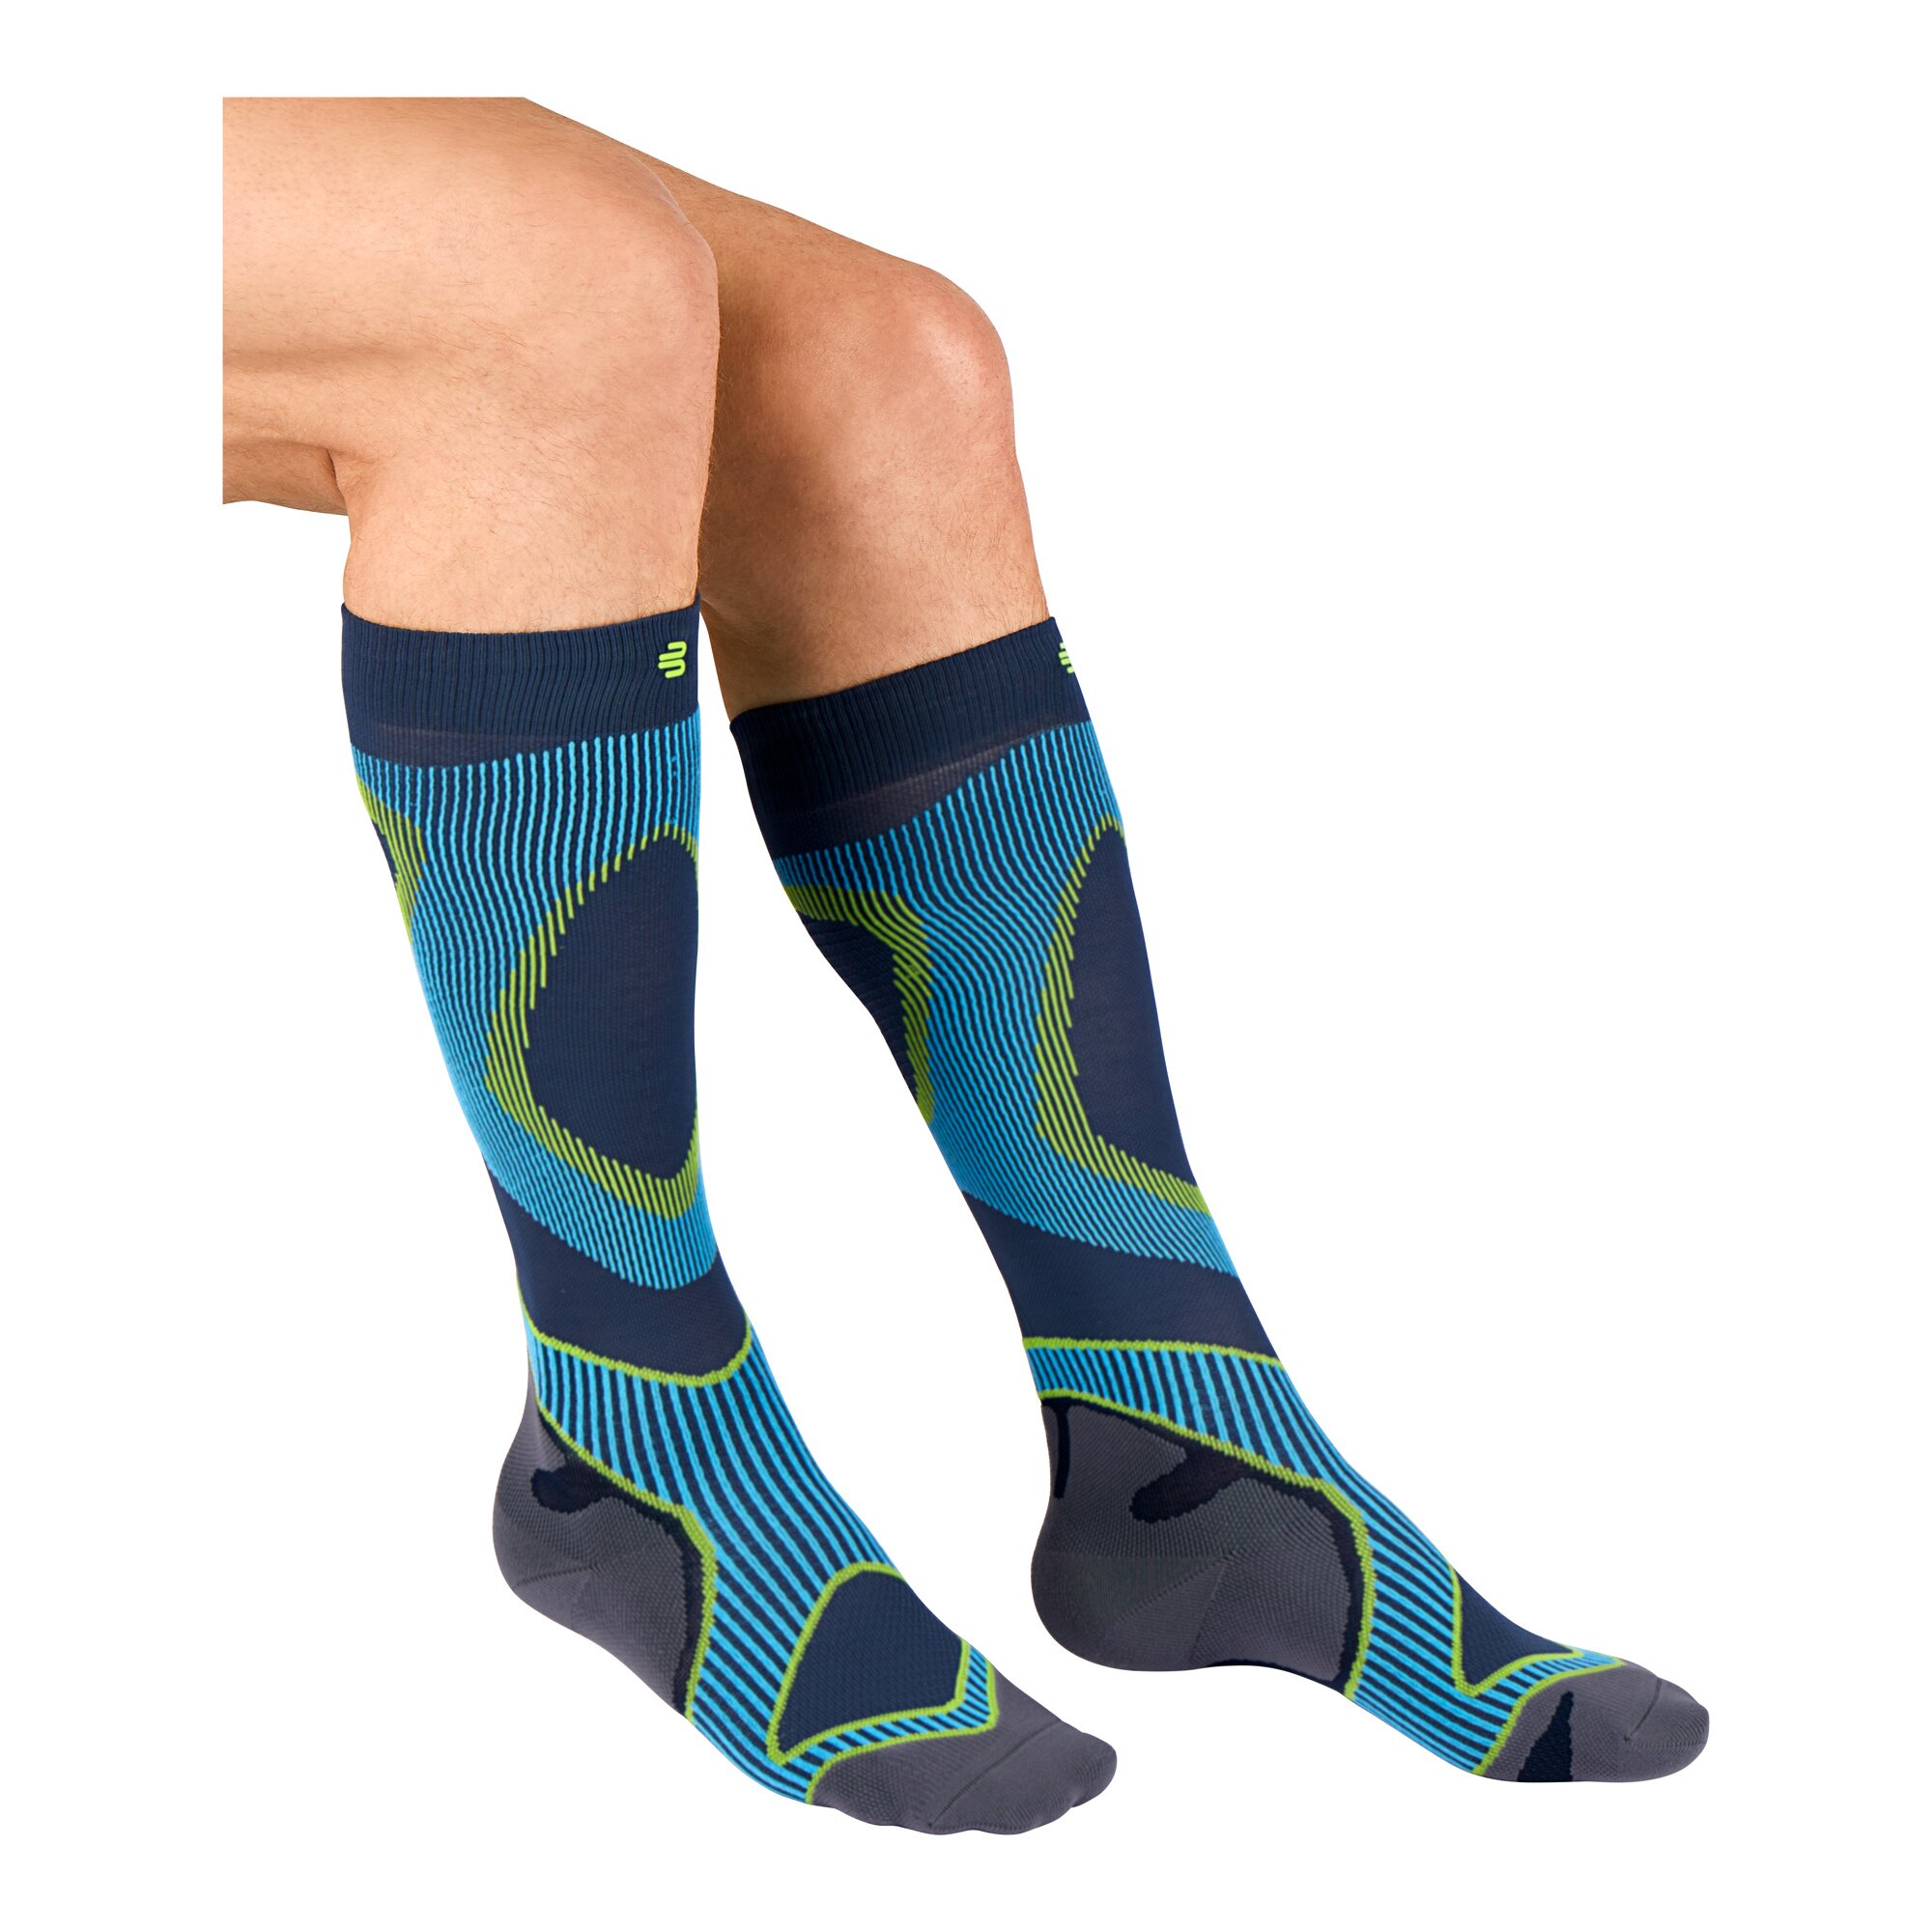 Image of Compression Socks "Allrounder"